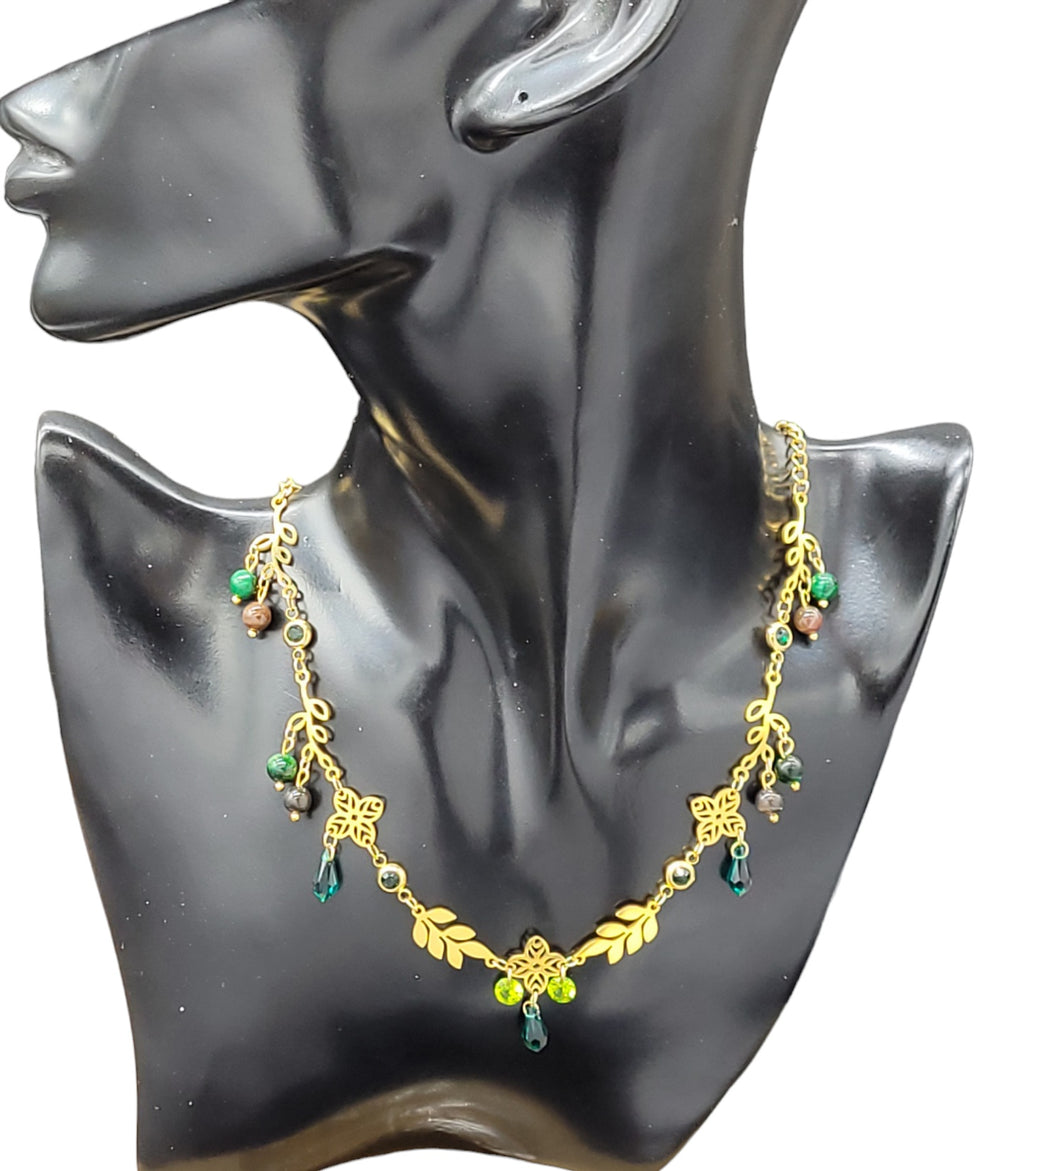 Halsin (necklace)